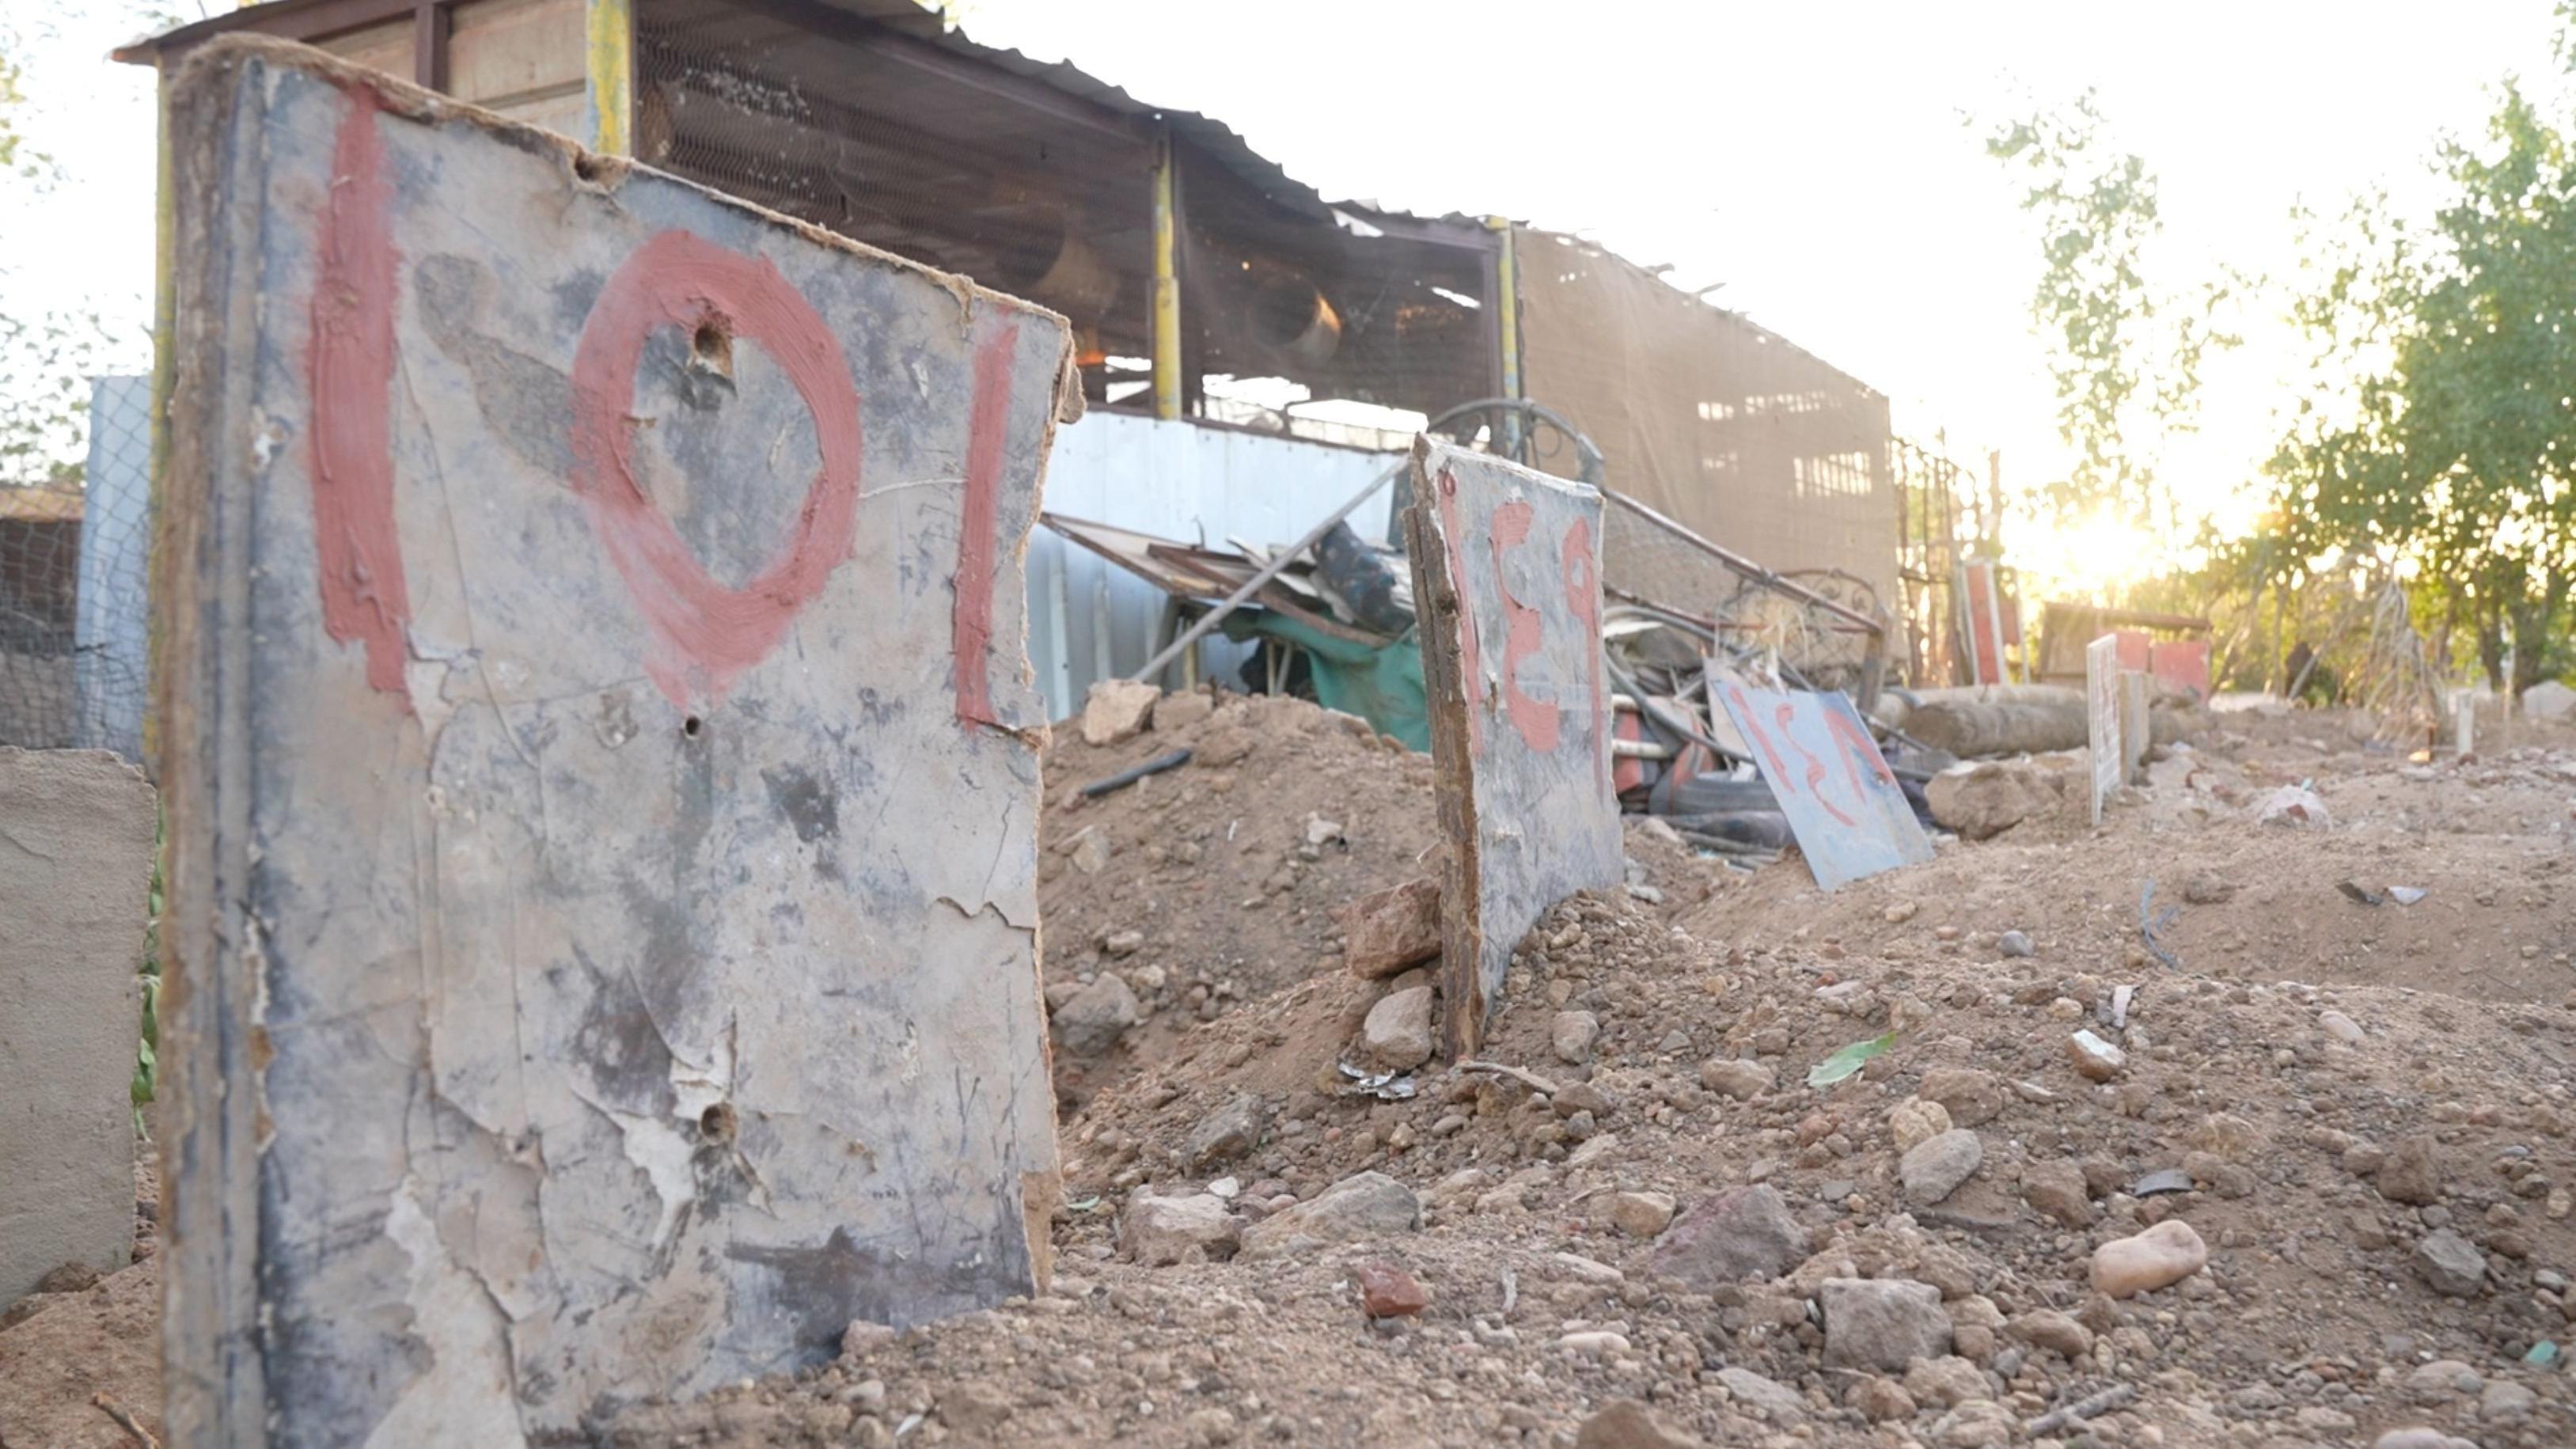 3-	الحجارة والألواح عليها أرقام على مواقع الدفن على قطعة أرض بالقرب من مسجد في أم درمان